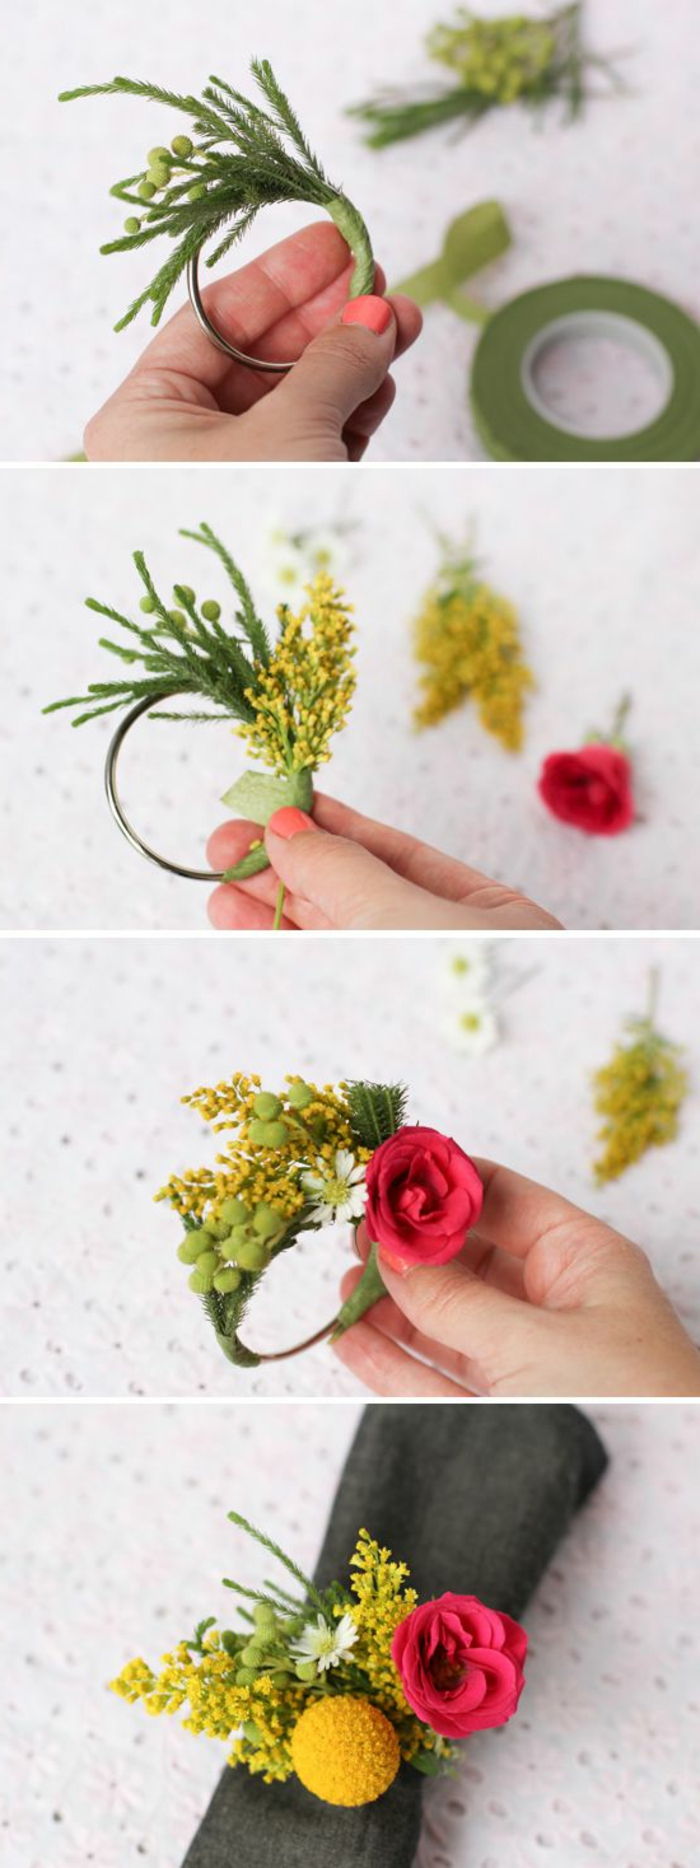 cool remeselné nápady - urobte stolové dekorácie sami, malé vence s kvetmi, obrúsok